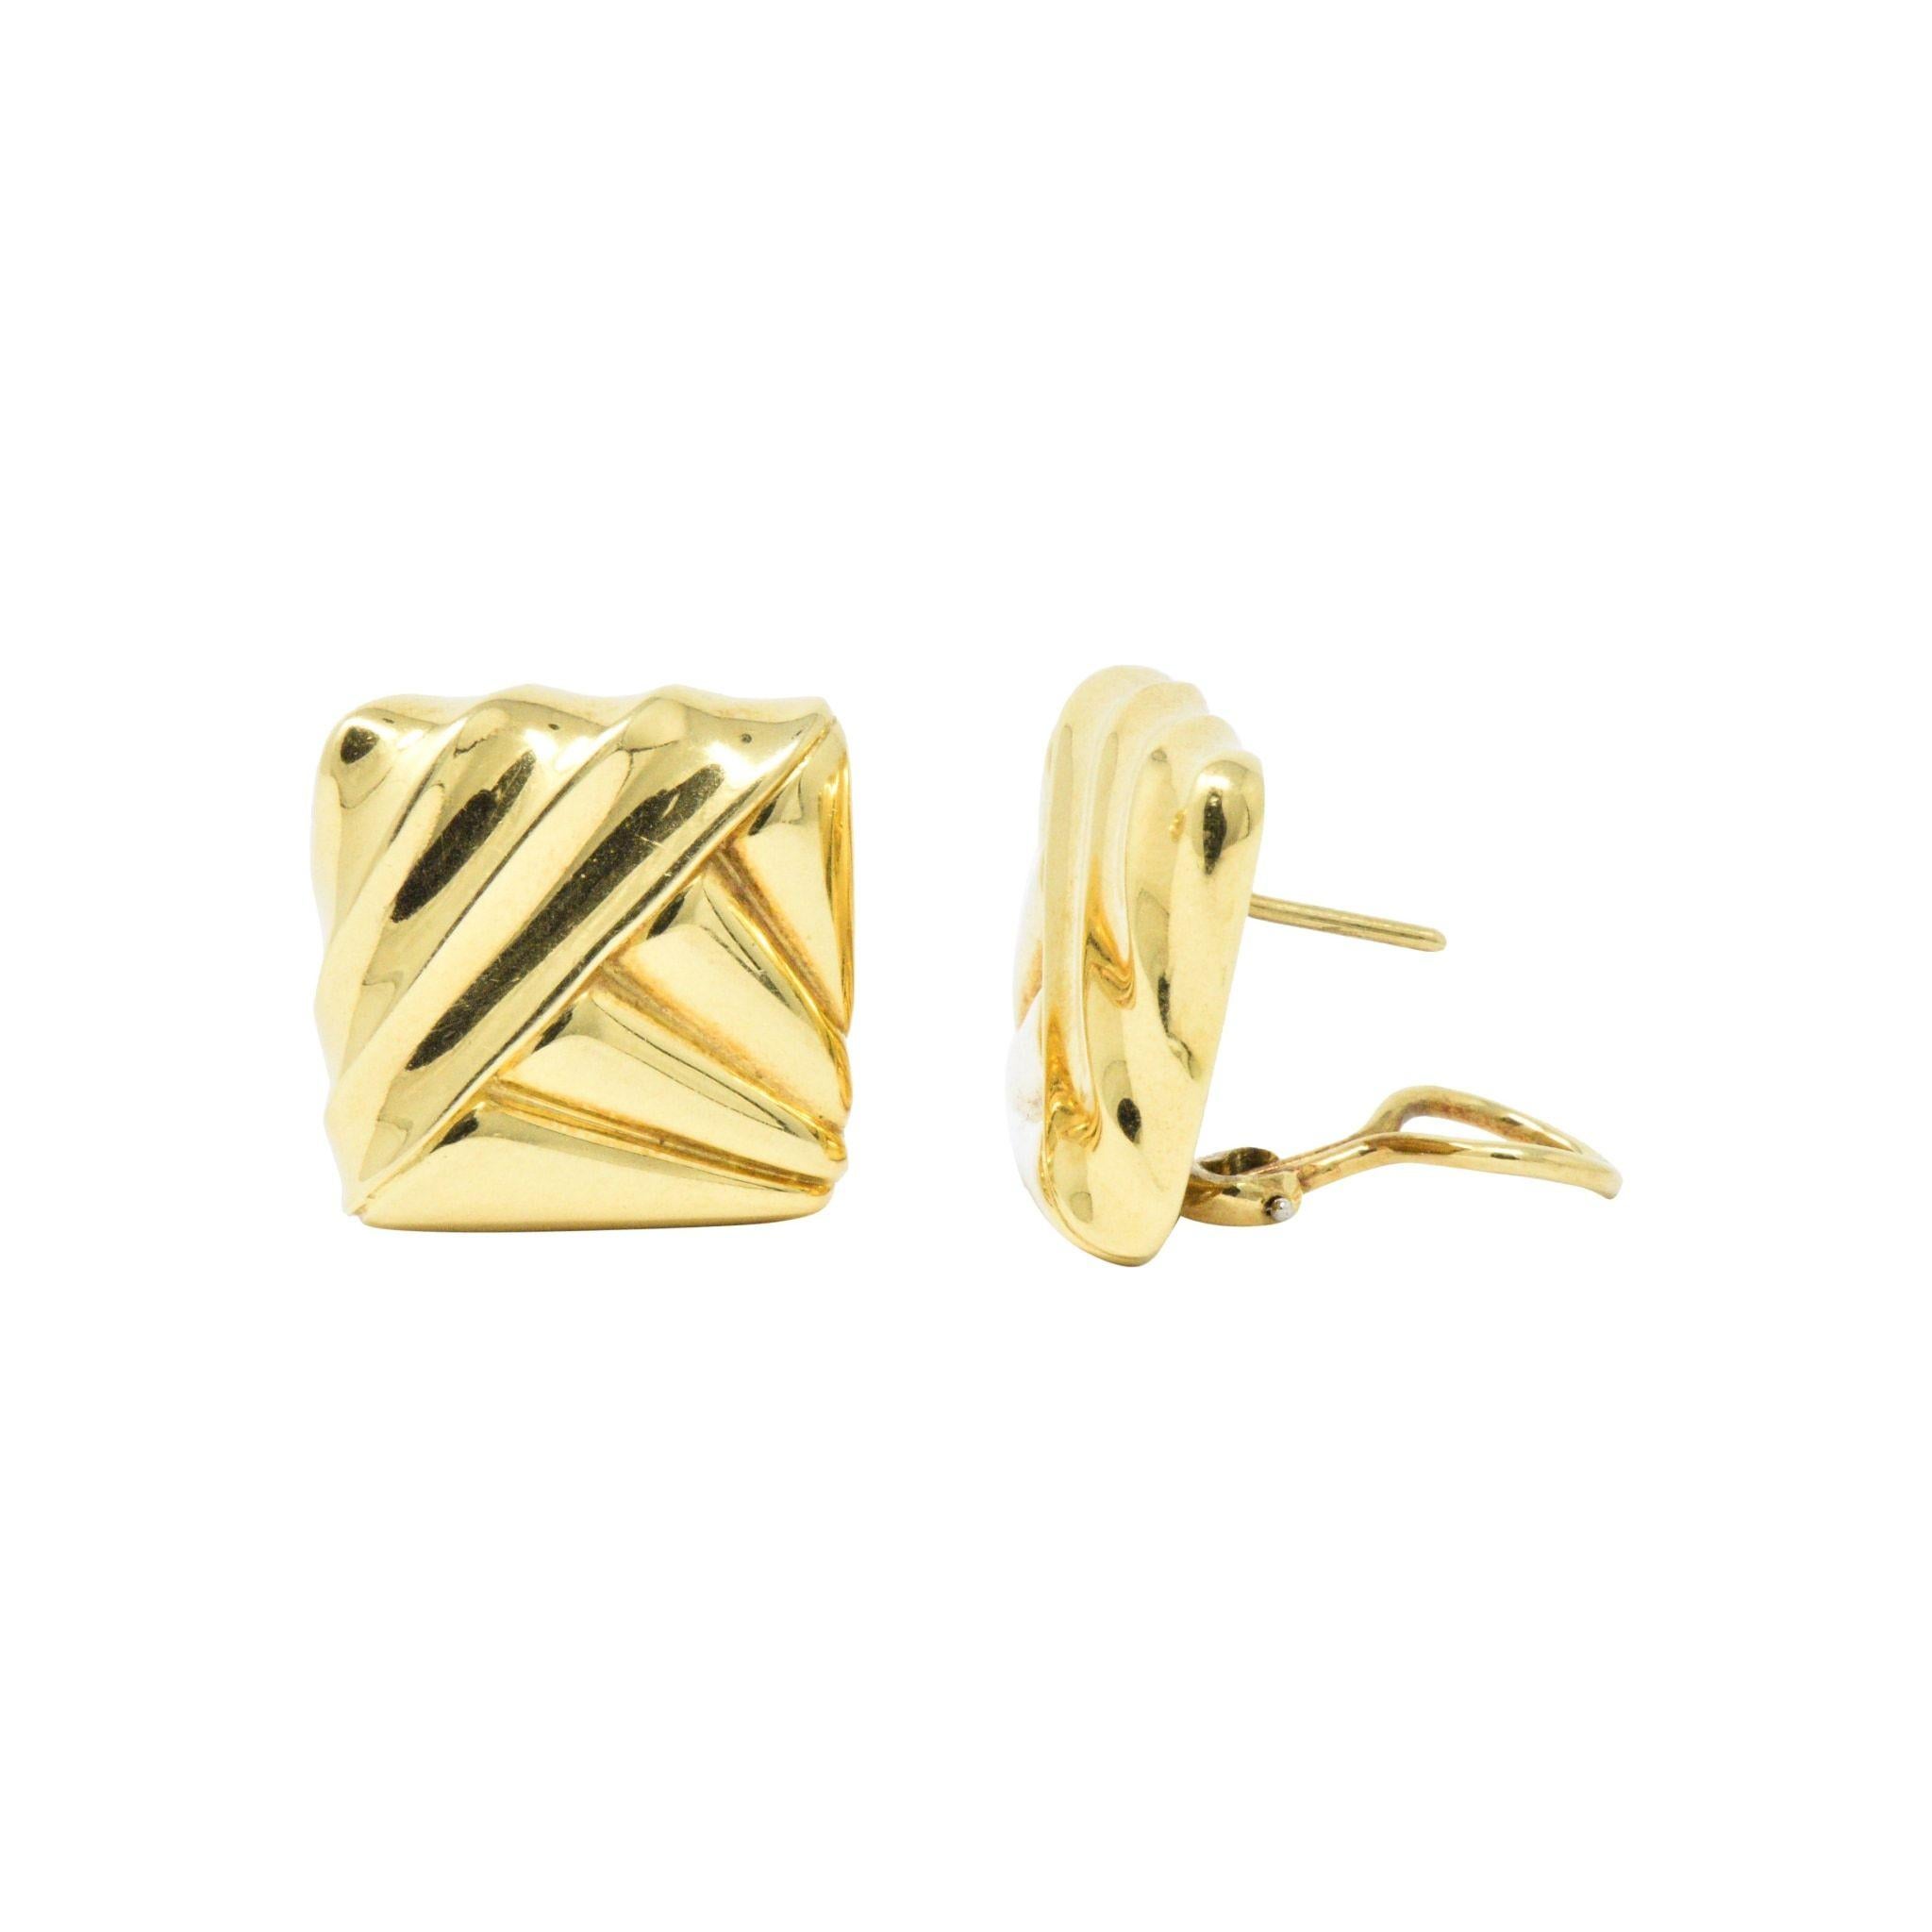 Modernist Cartier 18 Karat Yellow Gold Geometric Motif Earrings, circa 1970